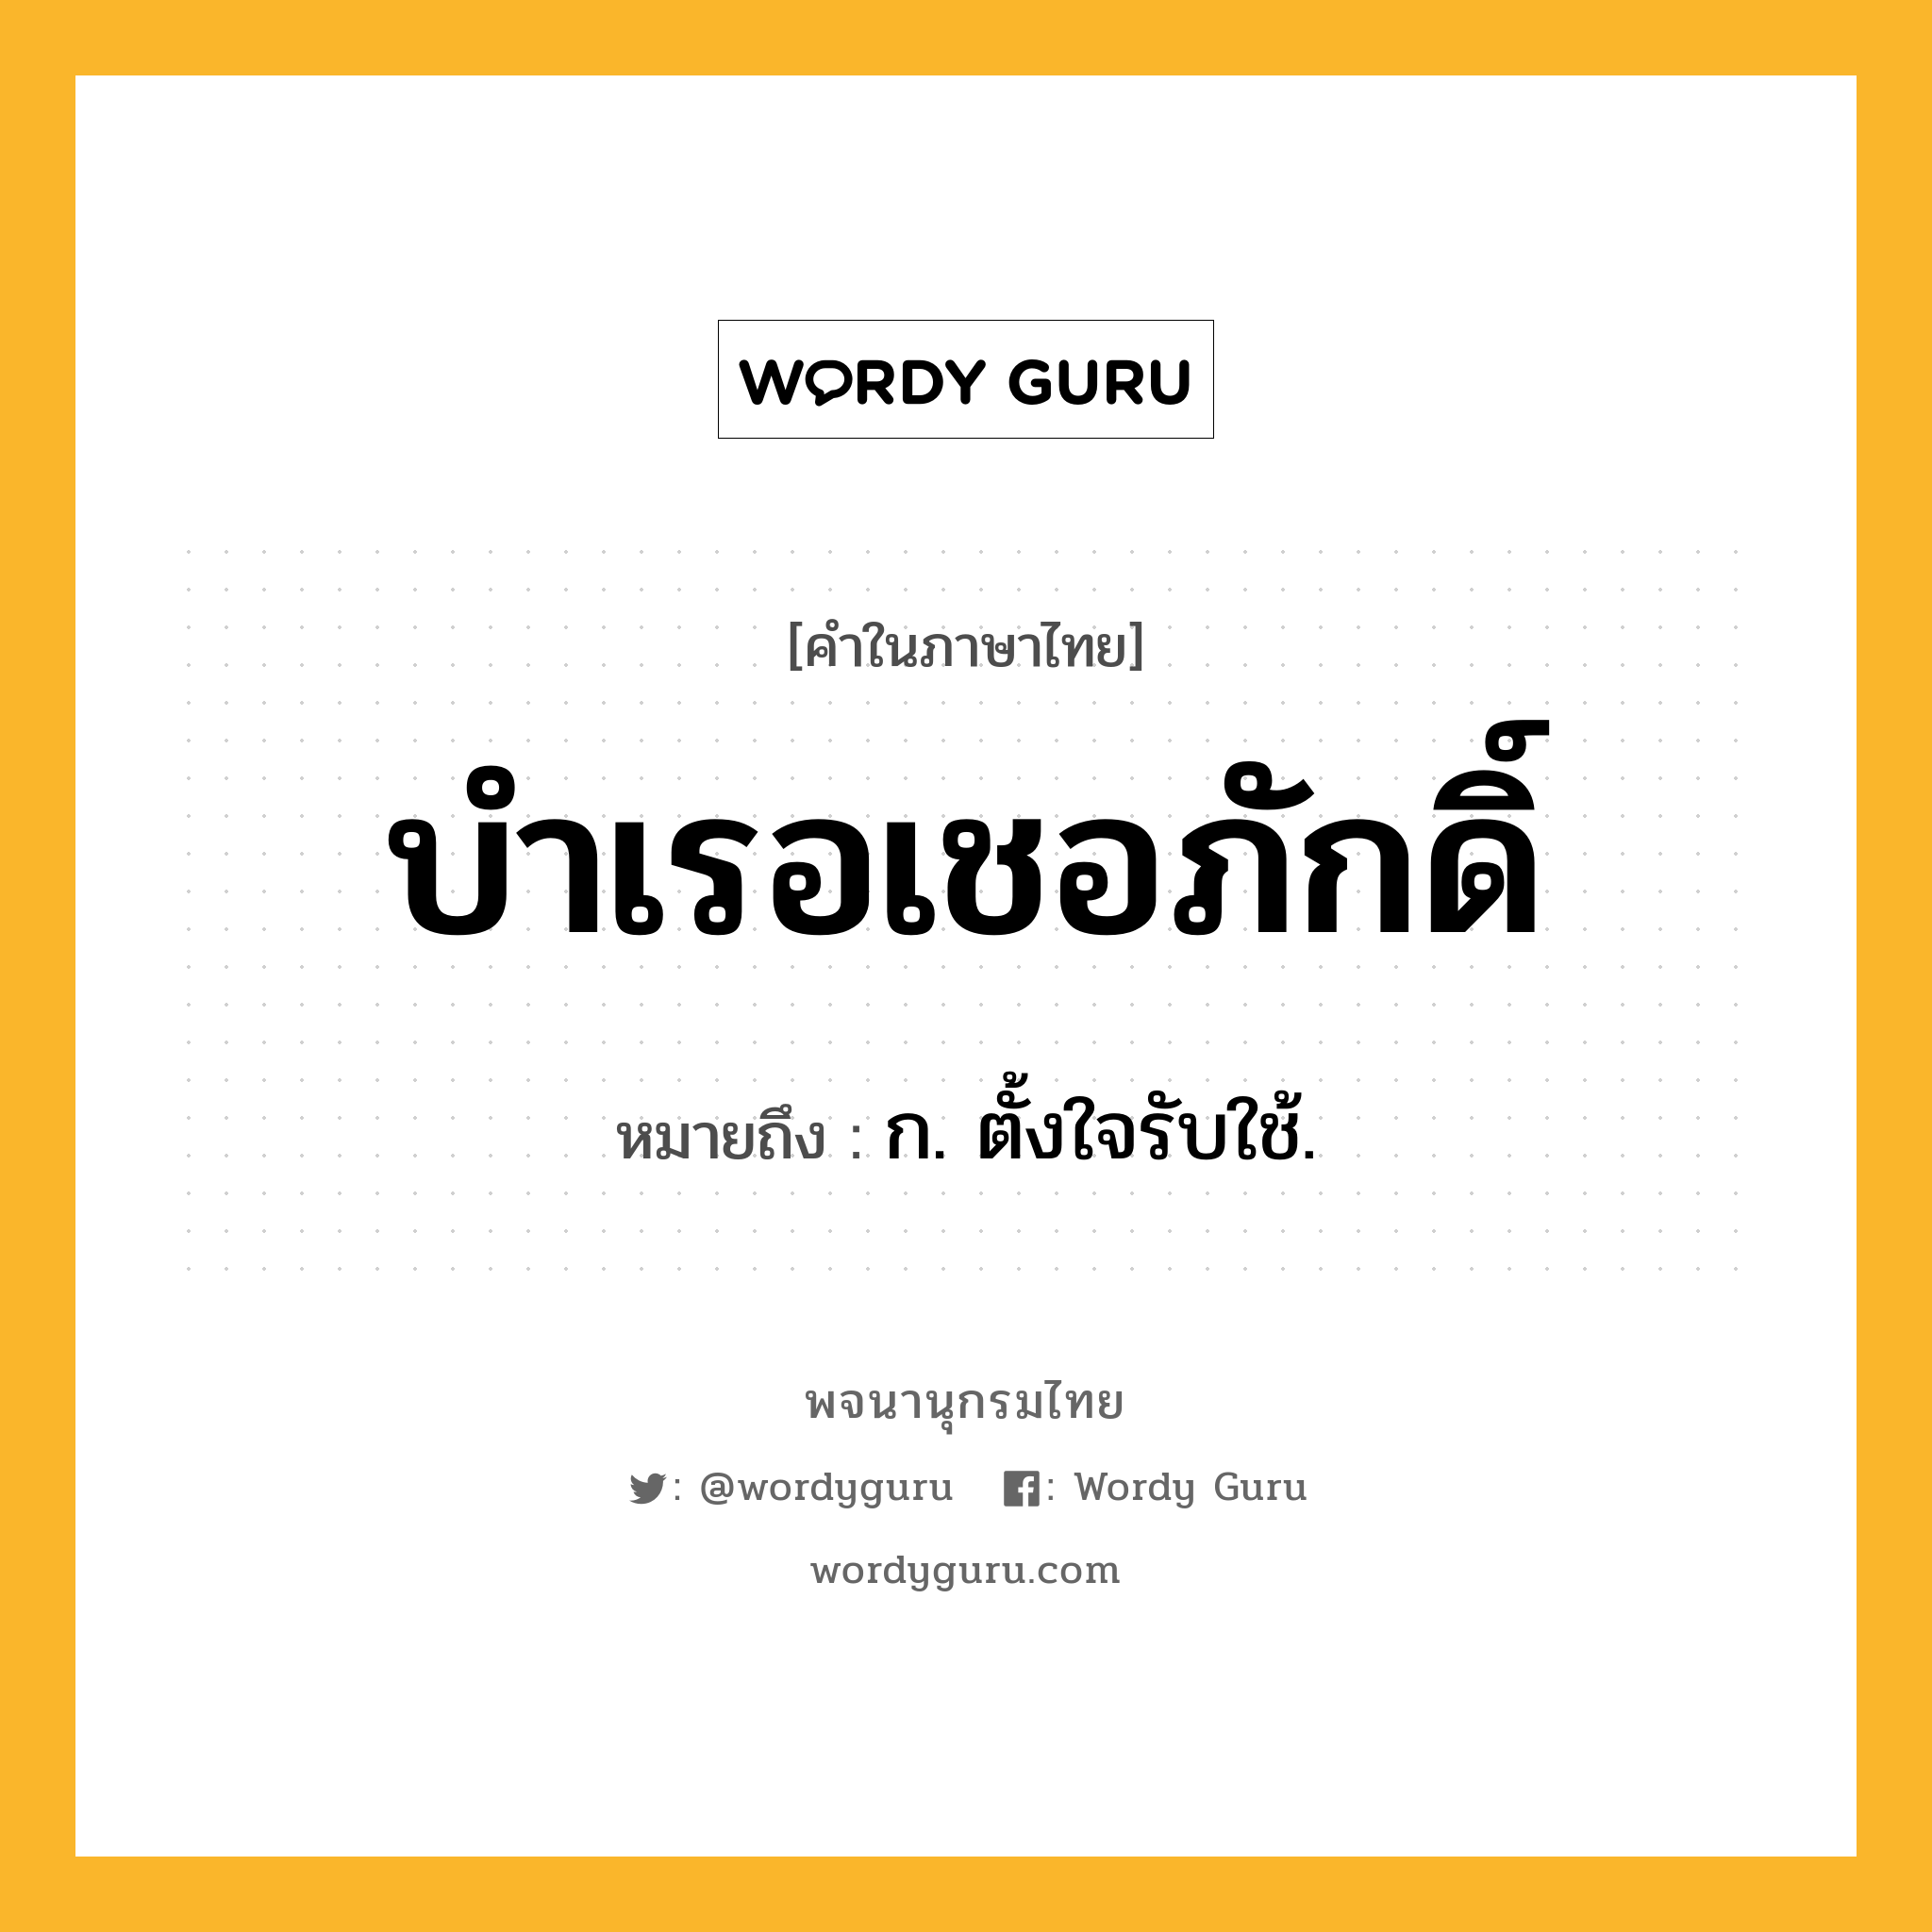 บำเรอเชอภักดิ์ ความหมาย หมายถึงอะไร?, คำในภาษาไทย บำเรอเชอภักดิ์ หมายถึง ก. ตั้งใจรับใช้.